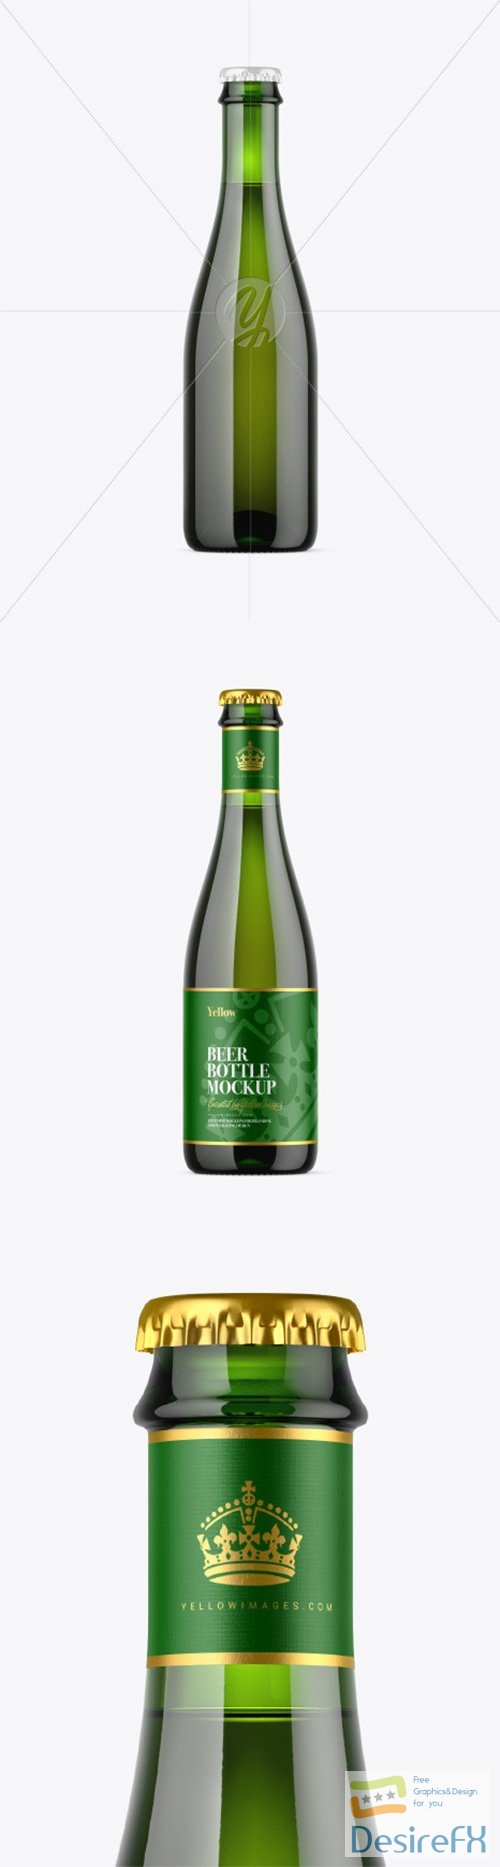 Green Glass Beer Bottle Mockup 80509 TIF